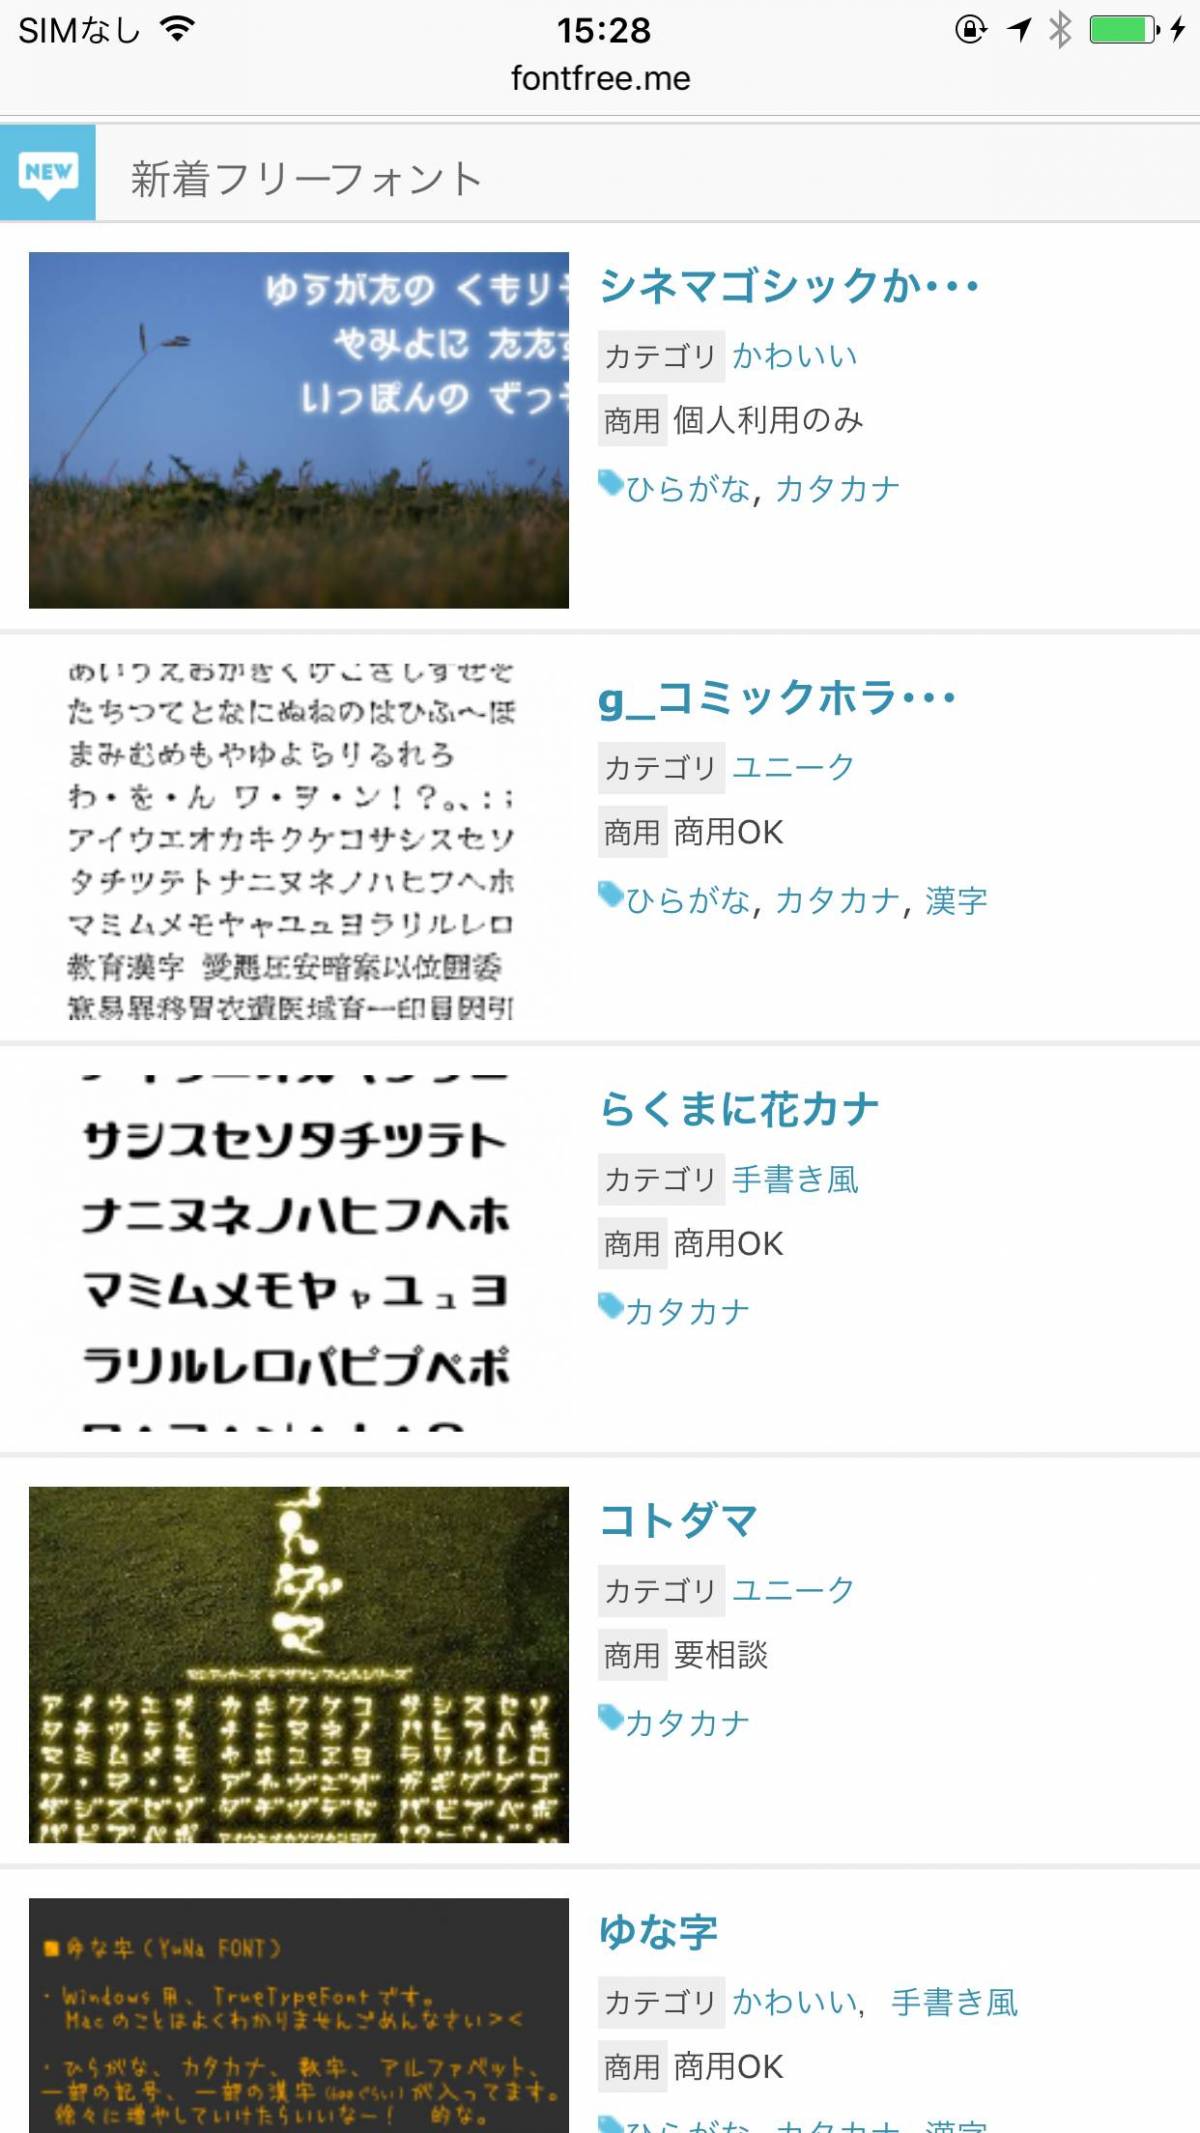 写真に文字入れができるおすすめアプリ9選 可愛い日本語フォントも